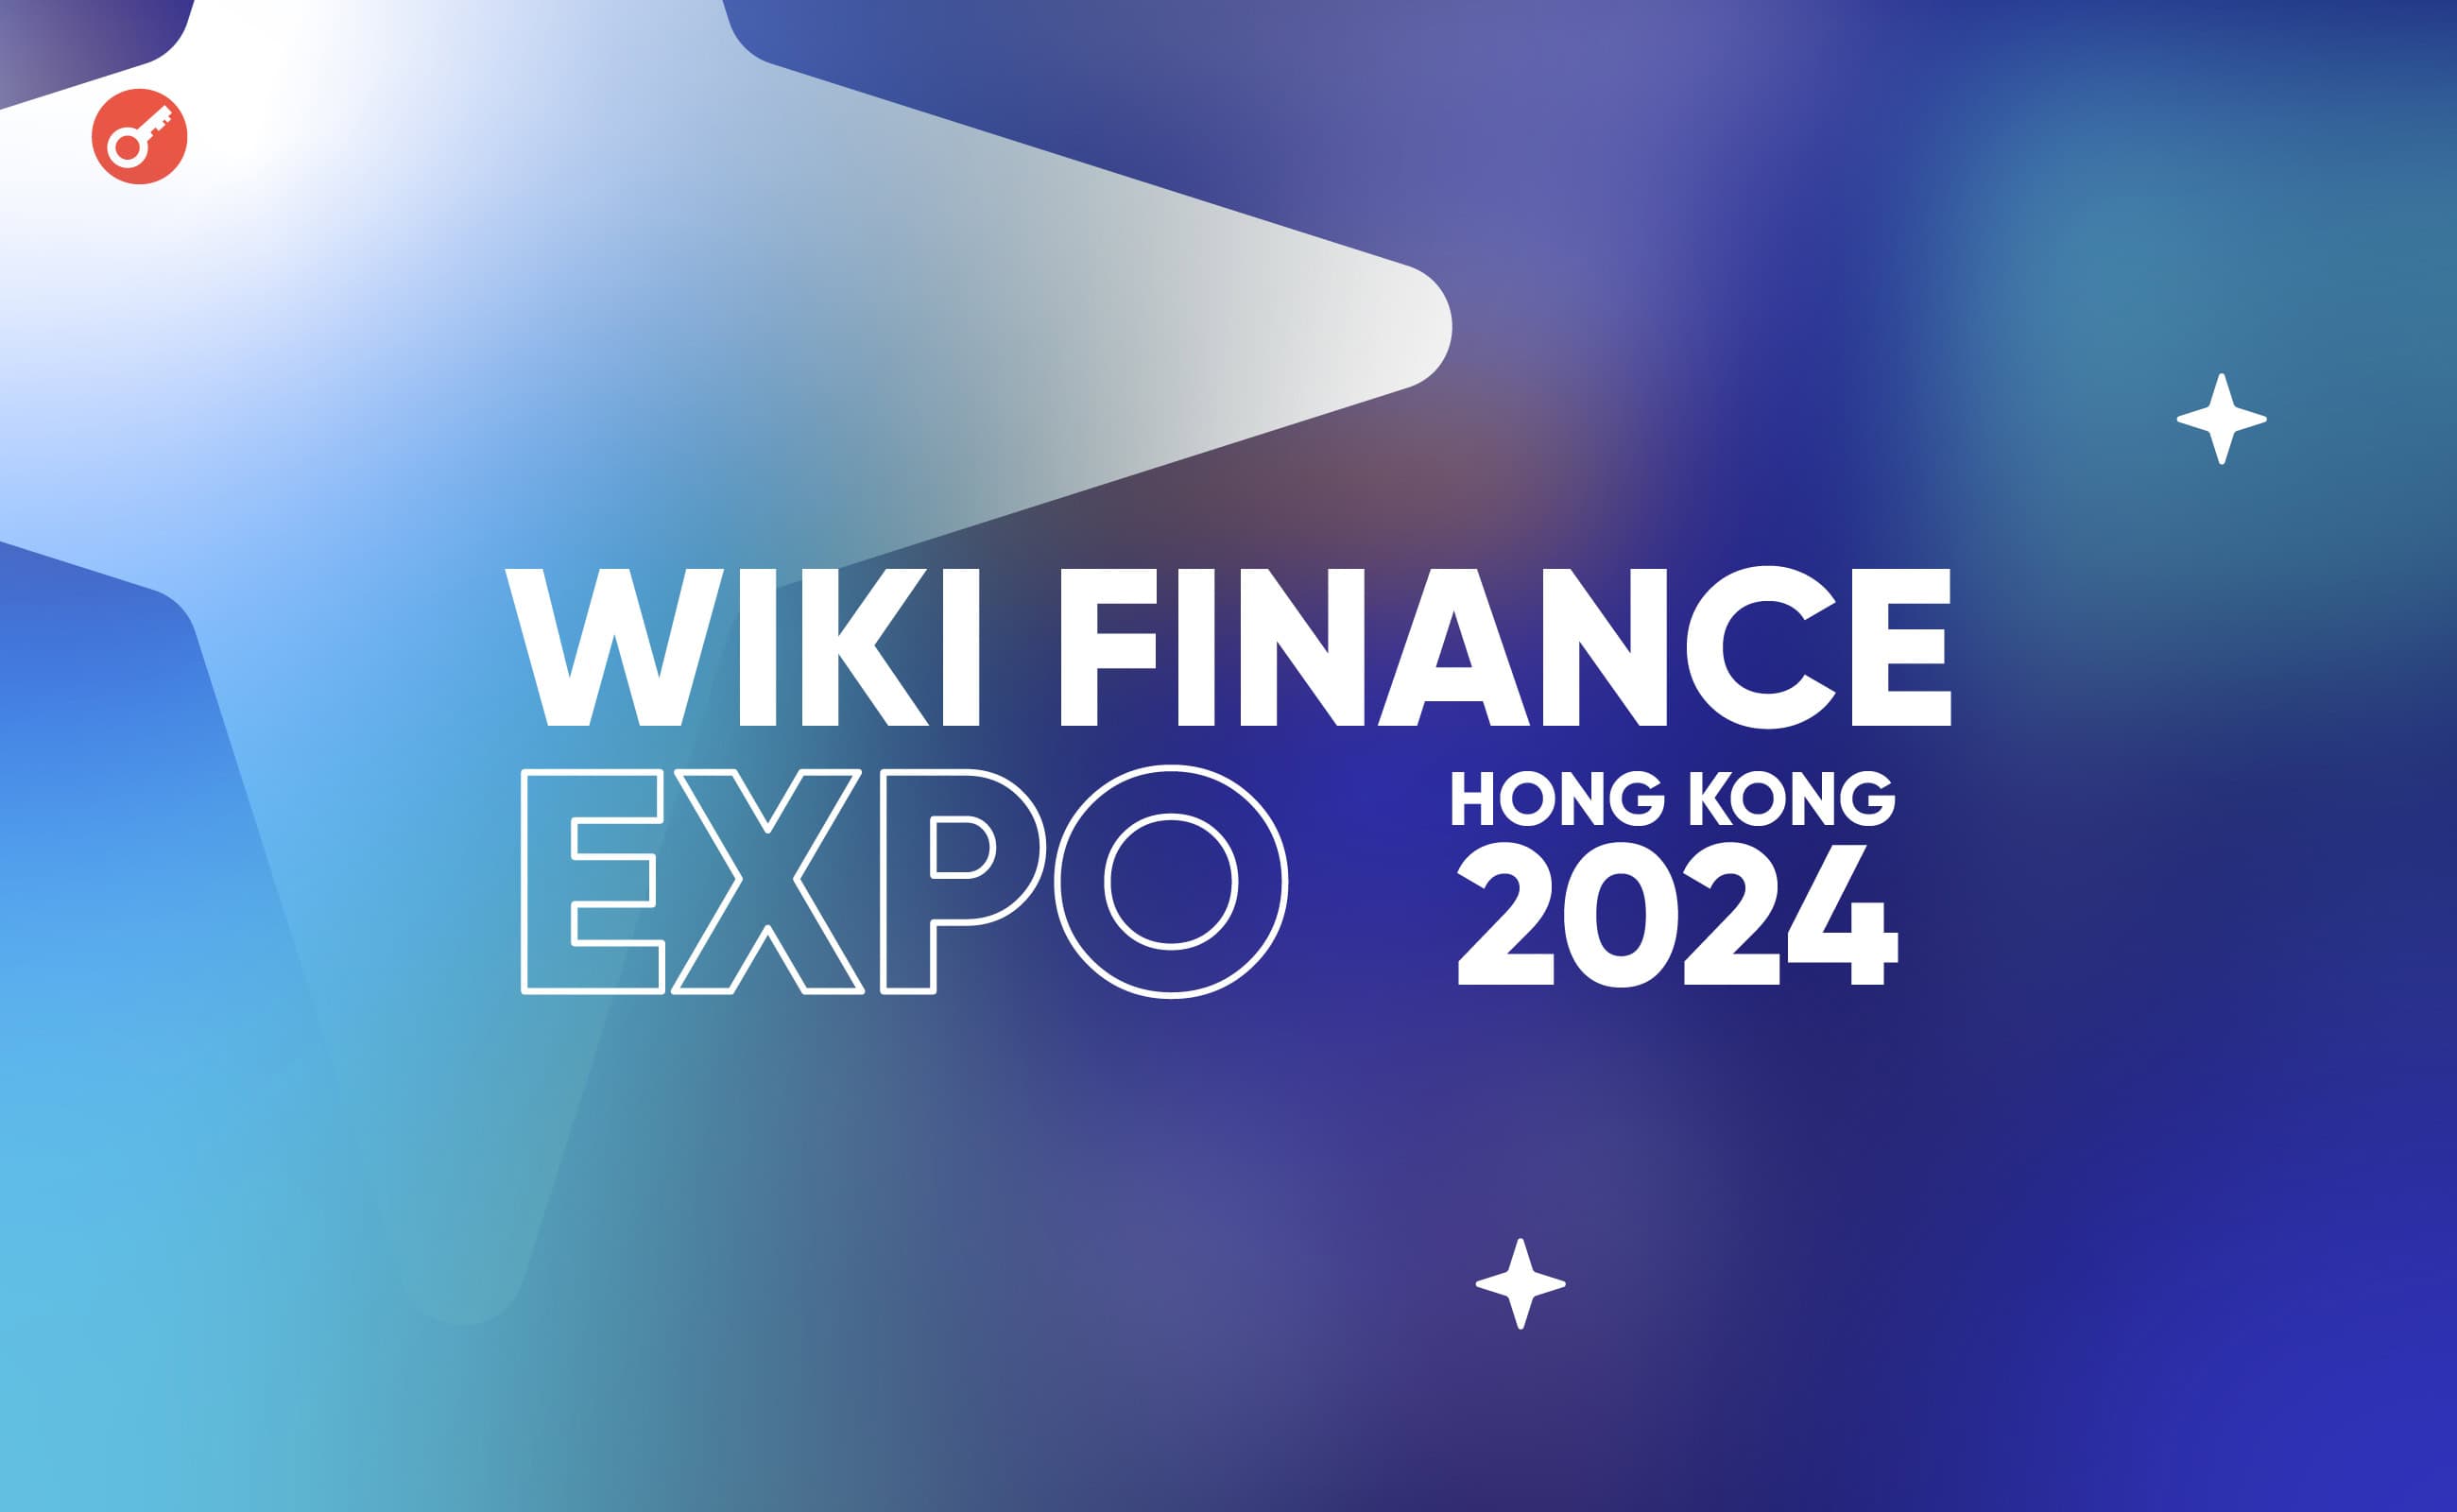 17 травня в Гонконзі відбудеться Wiki Finance Expo Hong Kong 2024. Головний колаж новини.